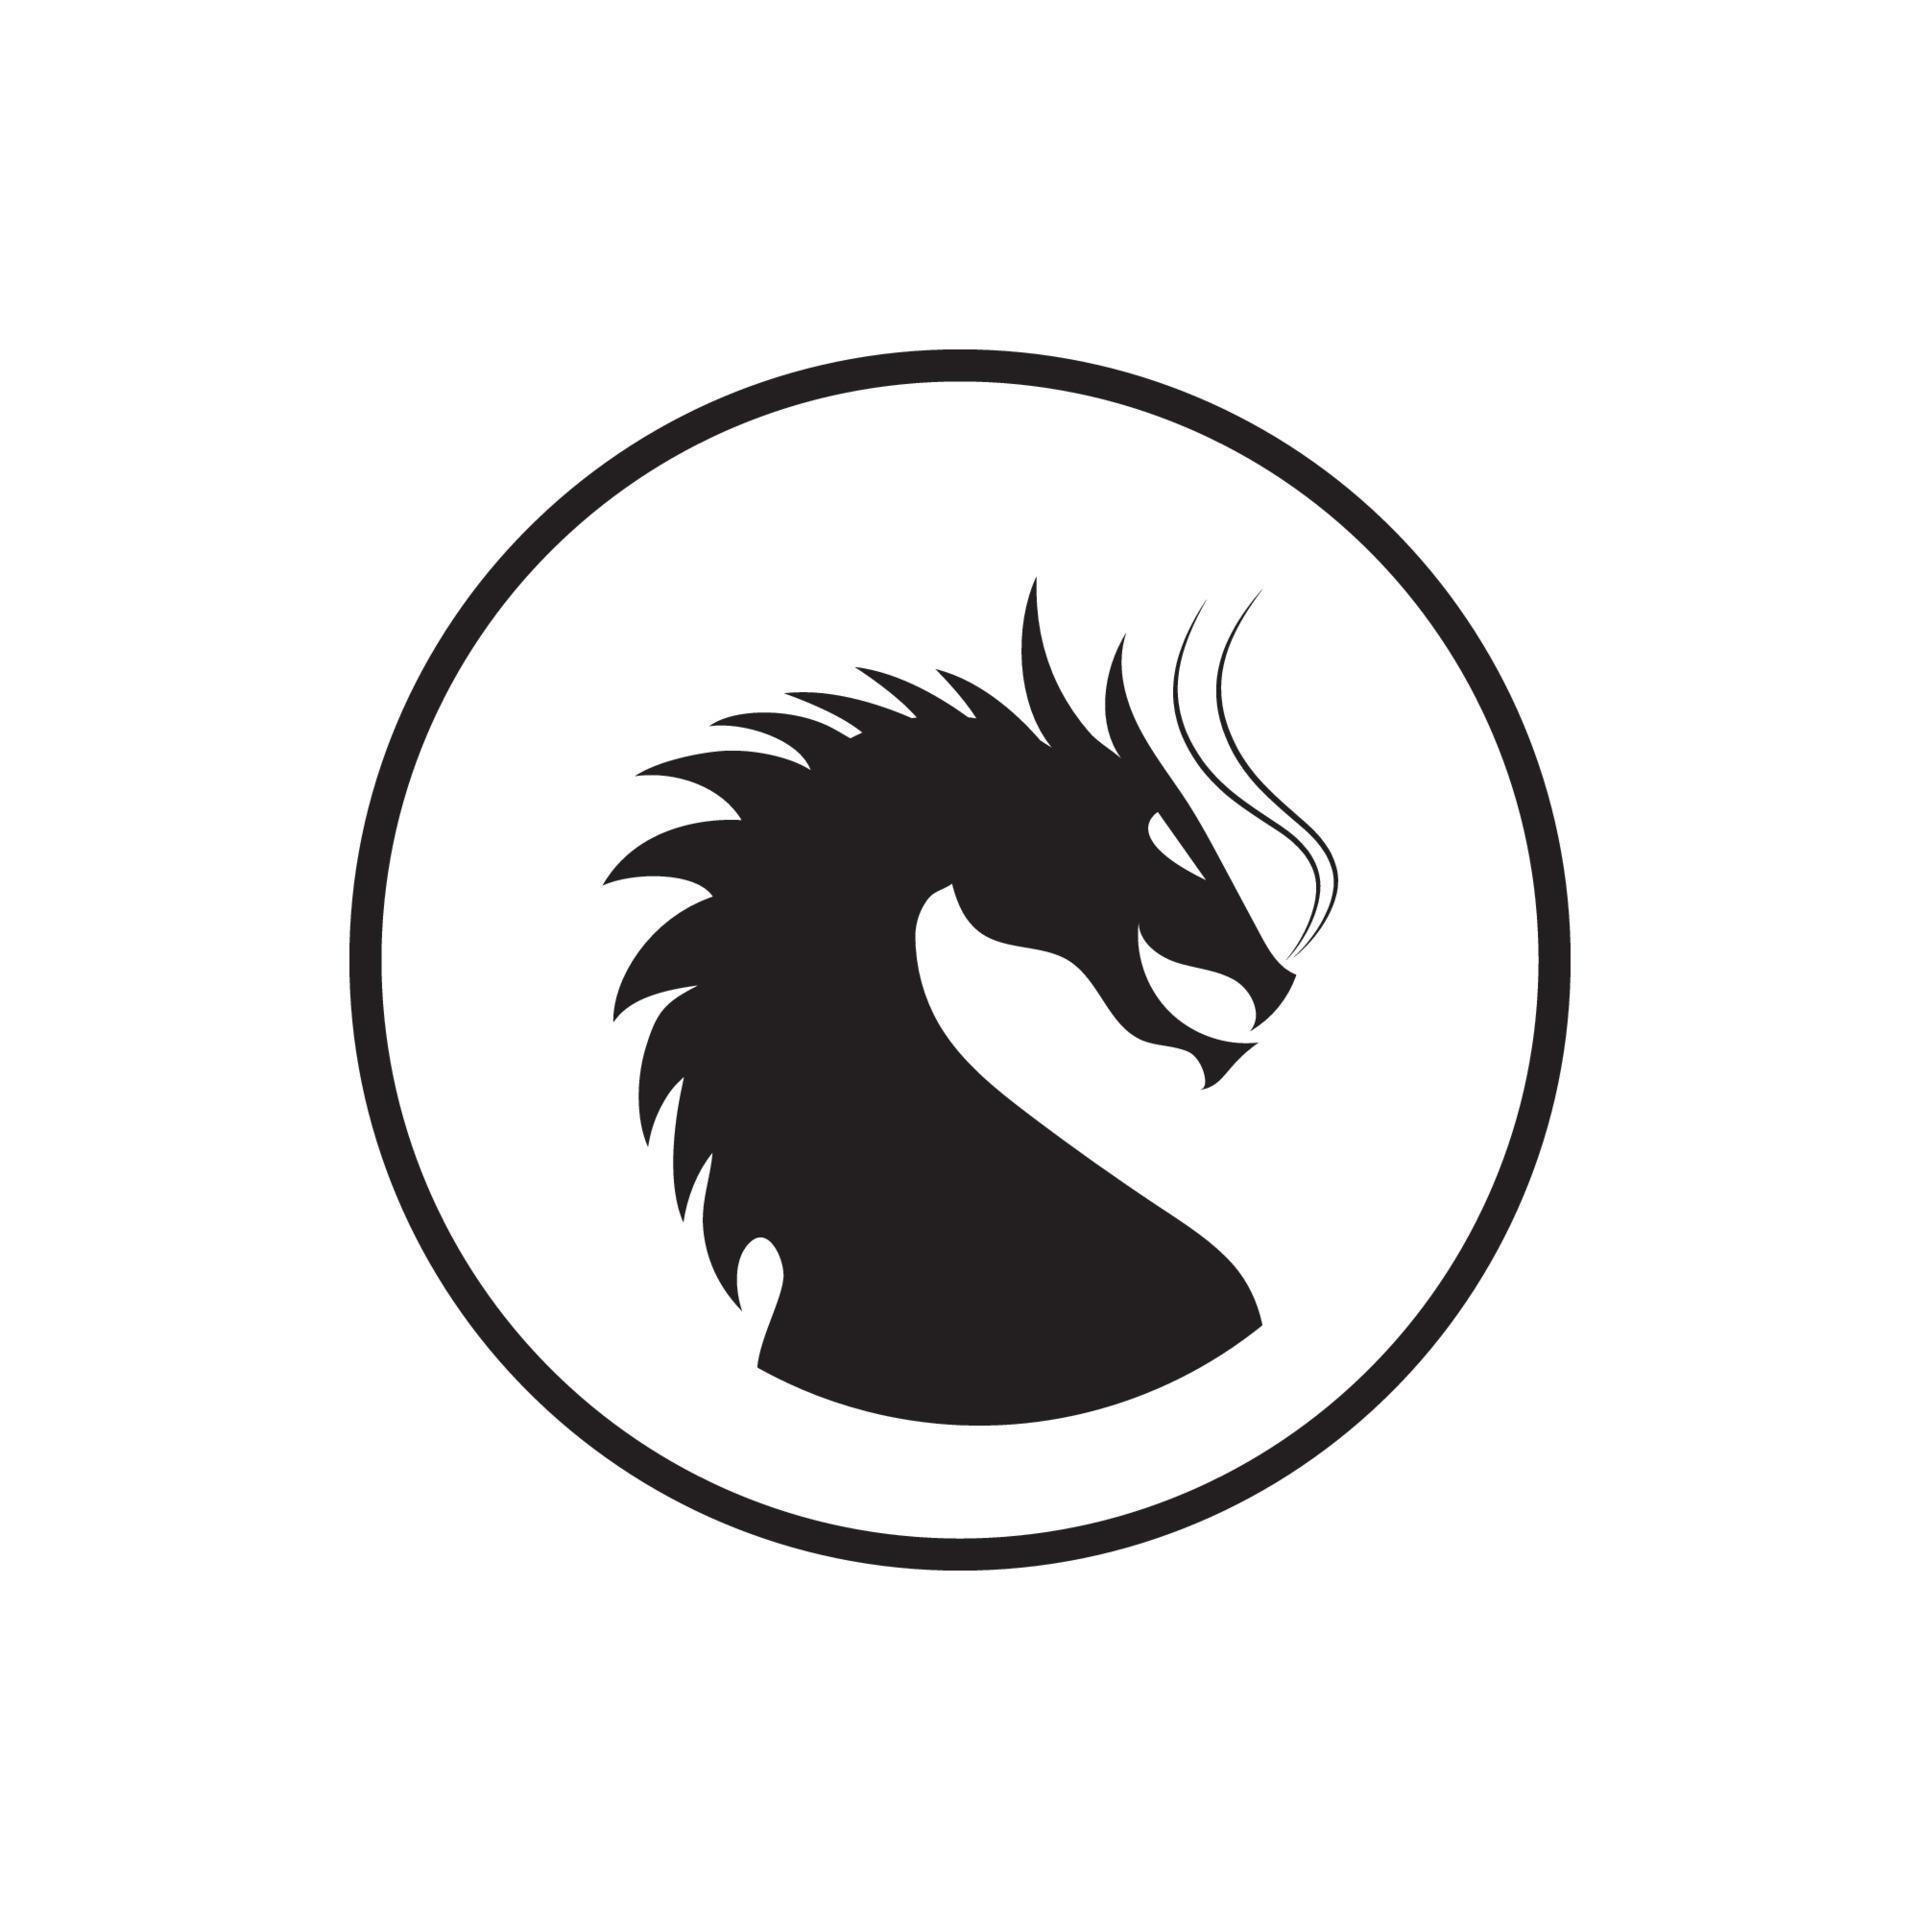 head Dragon simple logo design vector icon illustration 6947305 Vector ...